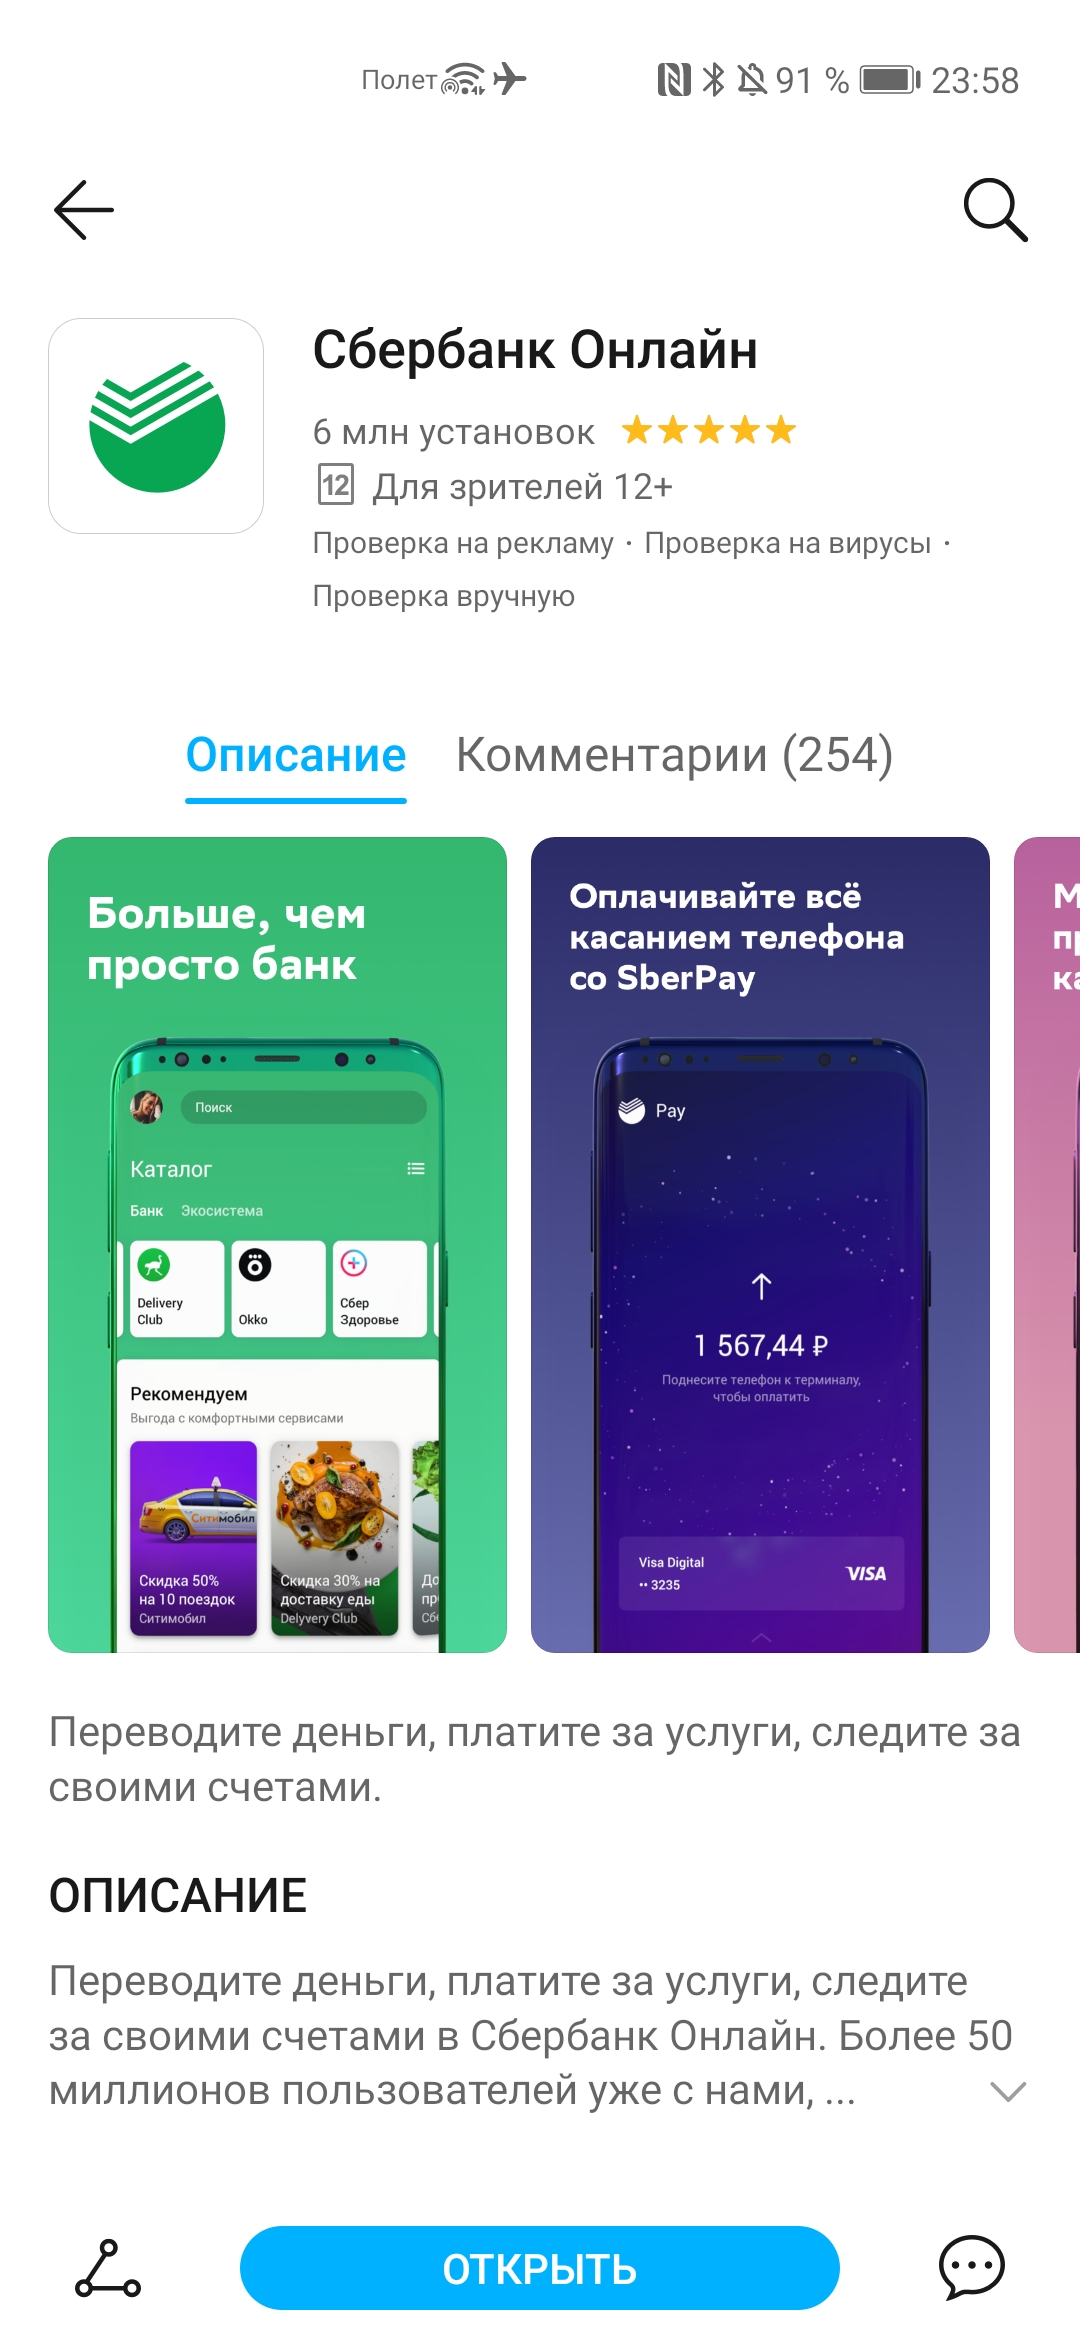 На смартфонах Honor появился платёжный сервис SberPay от Сбербанка.  Отвечаем на главные вопросы